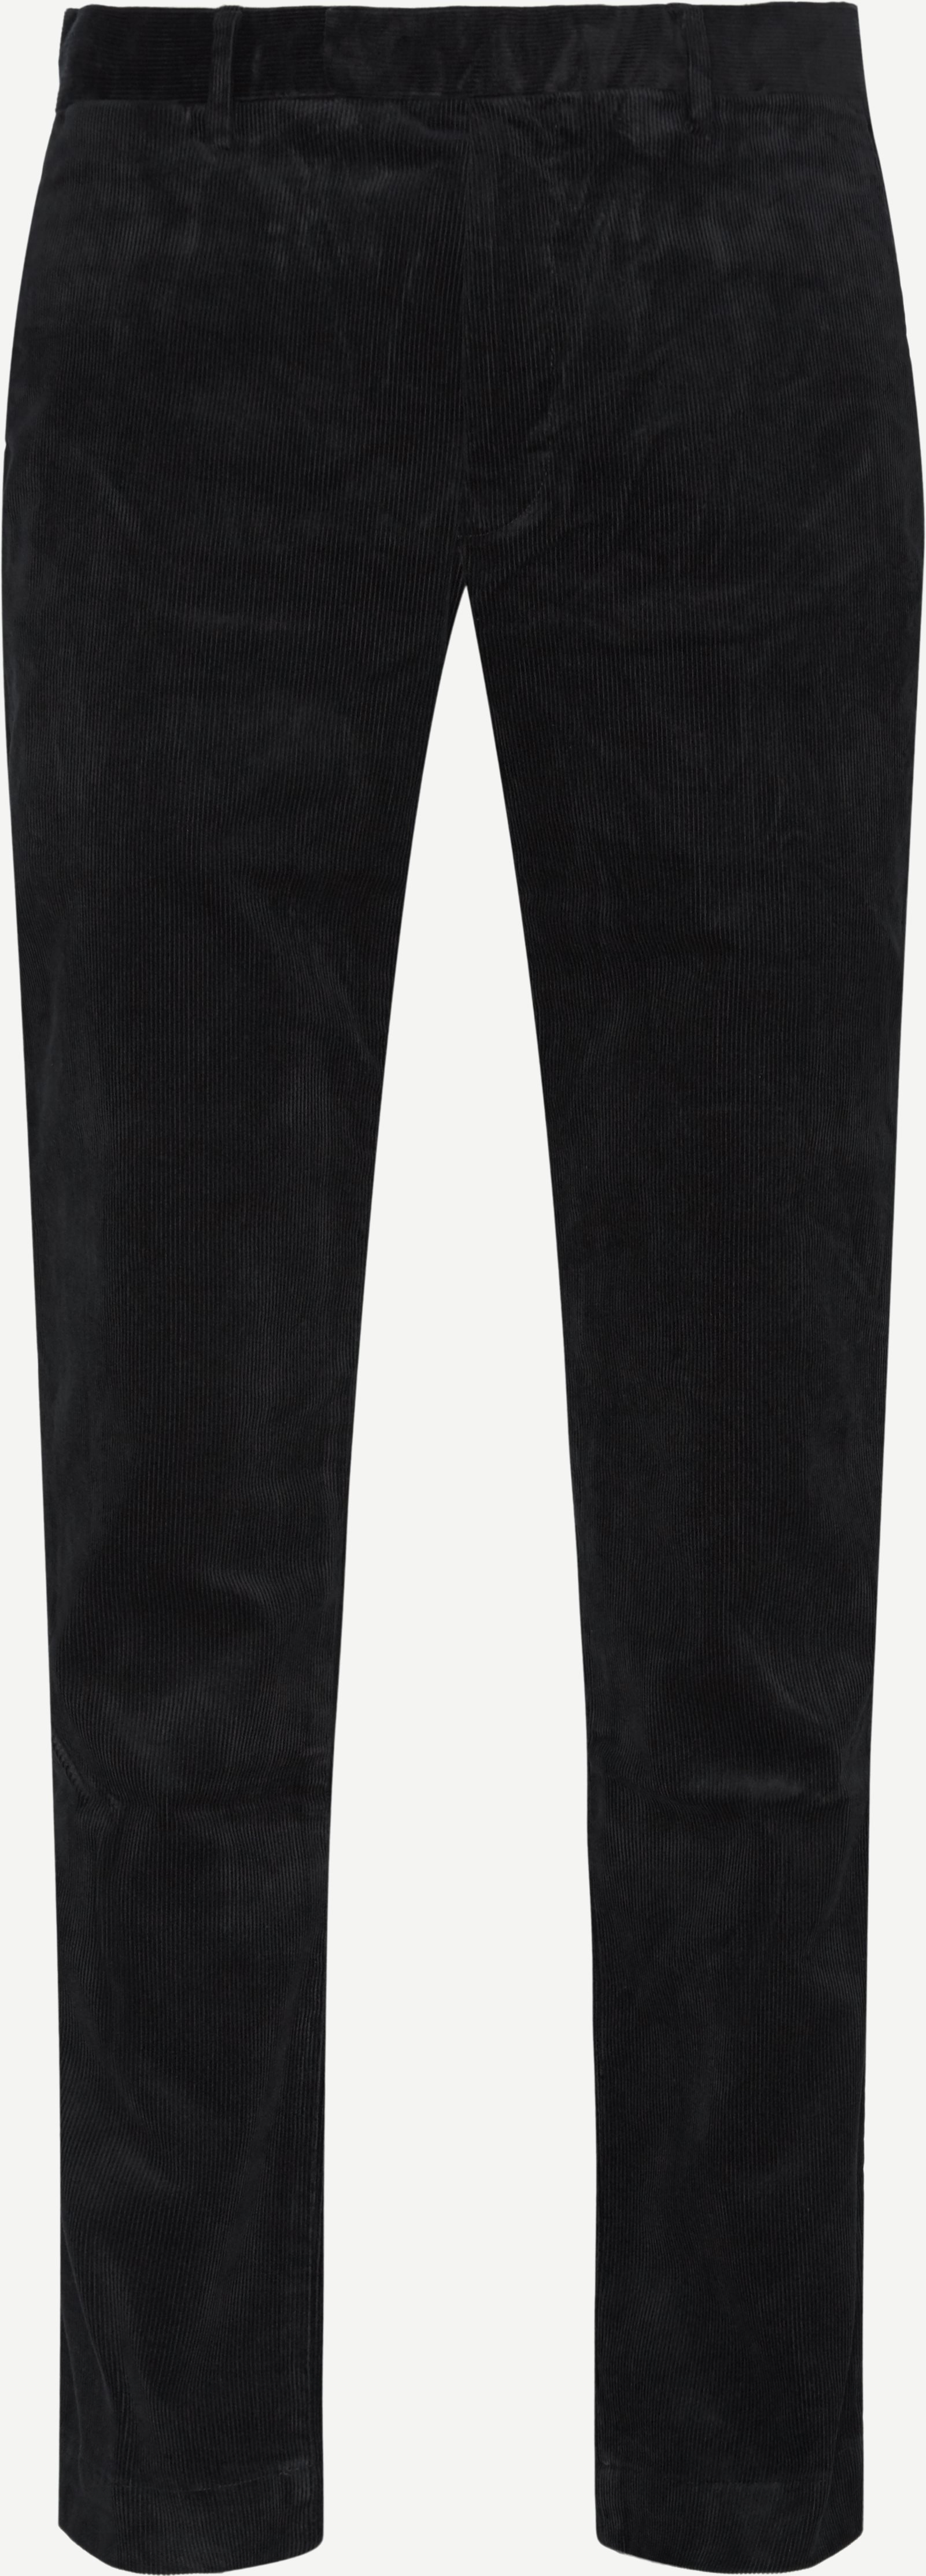 Corduroy Slim Pants - Trousers - Slim fit - Black